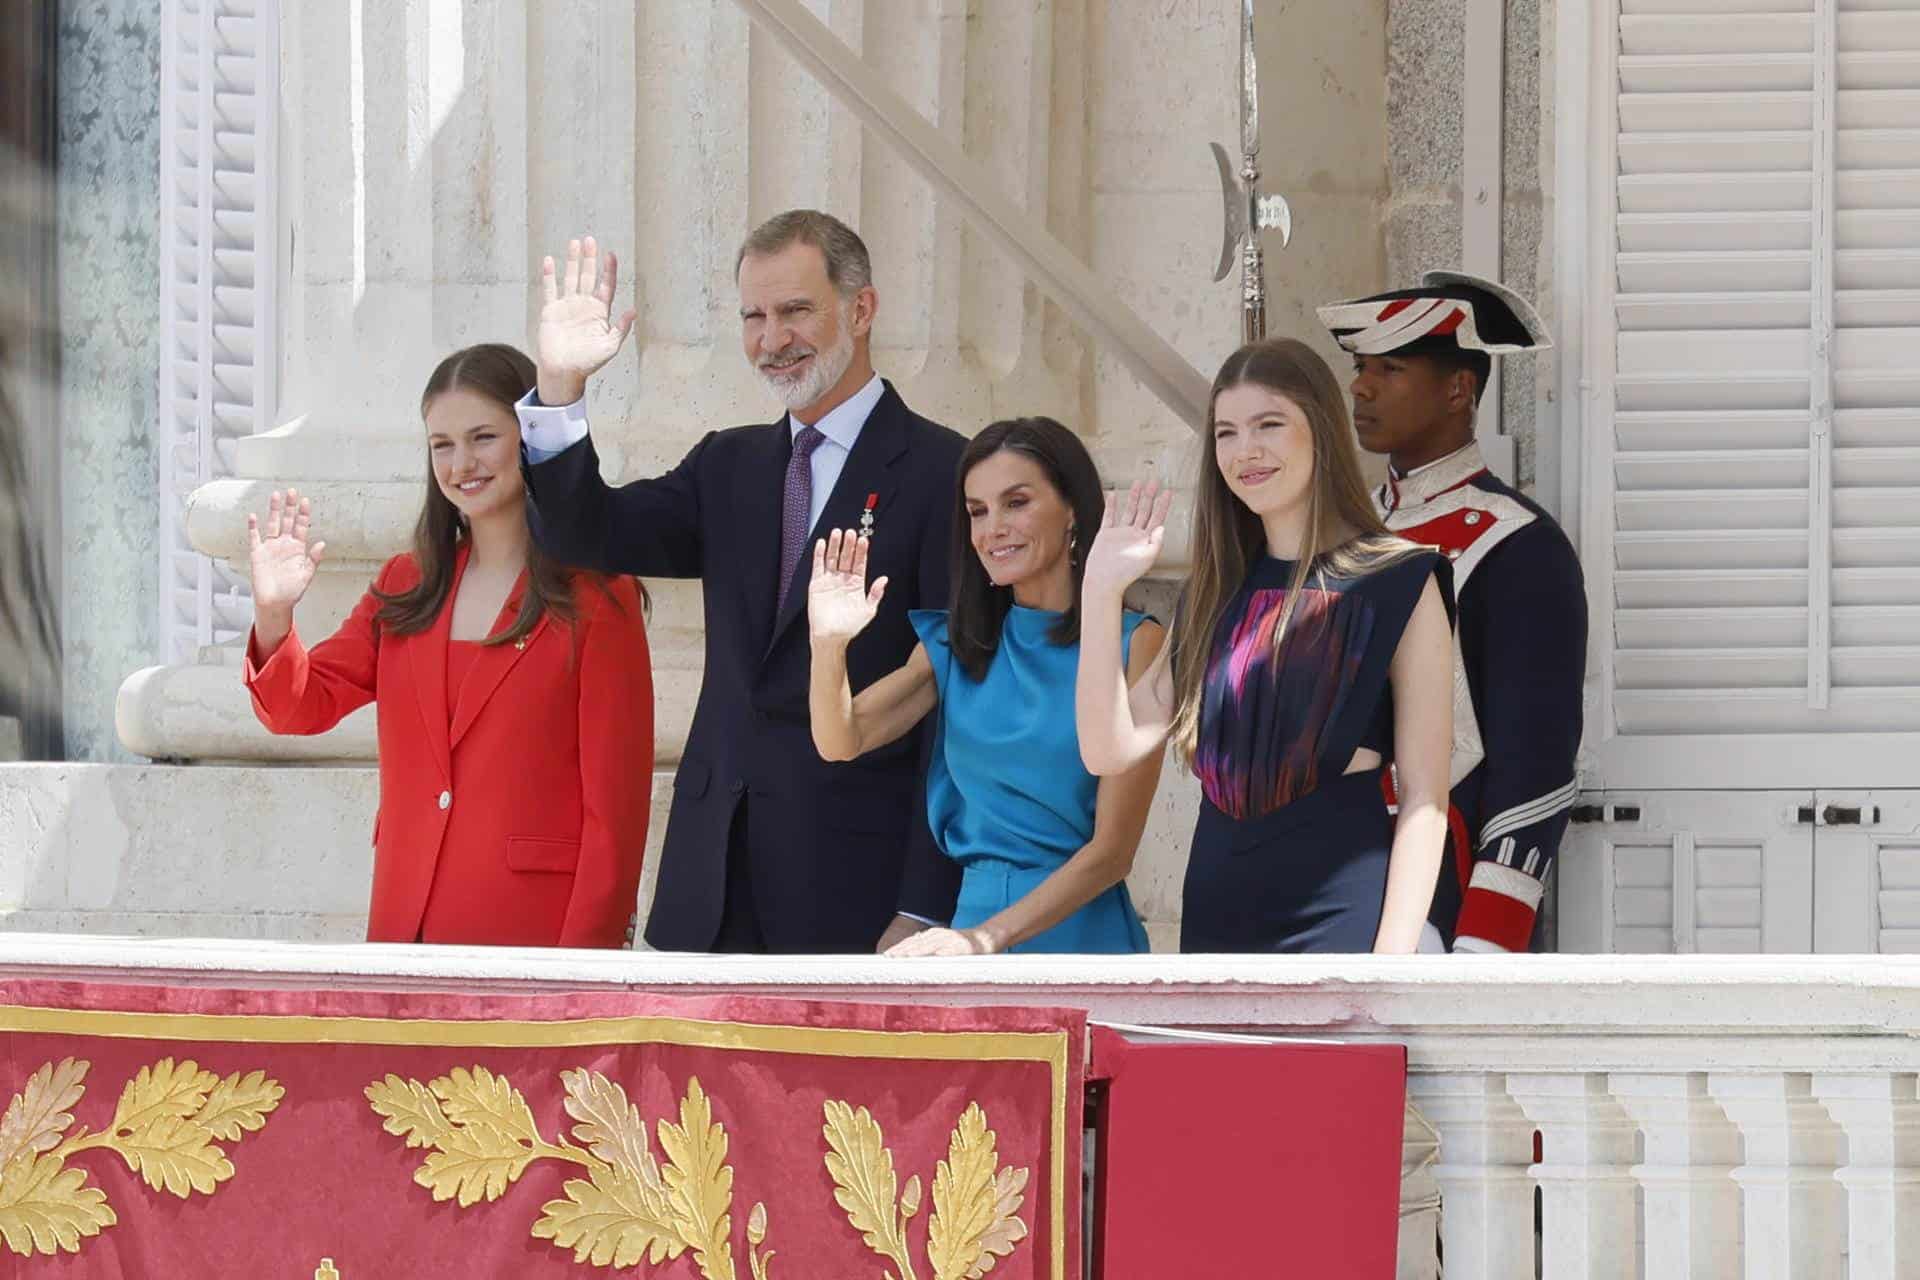 (De i a d) La princesa de Asturias, el rey Felipe VI, la reina Letizia, y la infanta Sofía saludan desde el balcón del Palacio Real en Madrid donde se conmemora el décimo aniversario del reinado de Felipe VI.